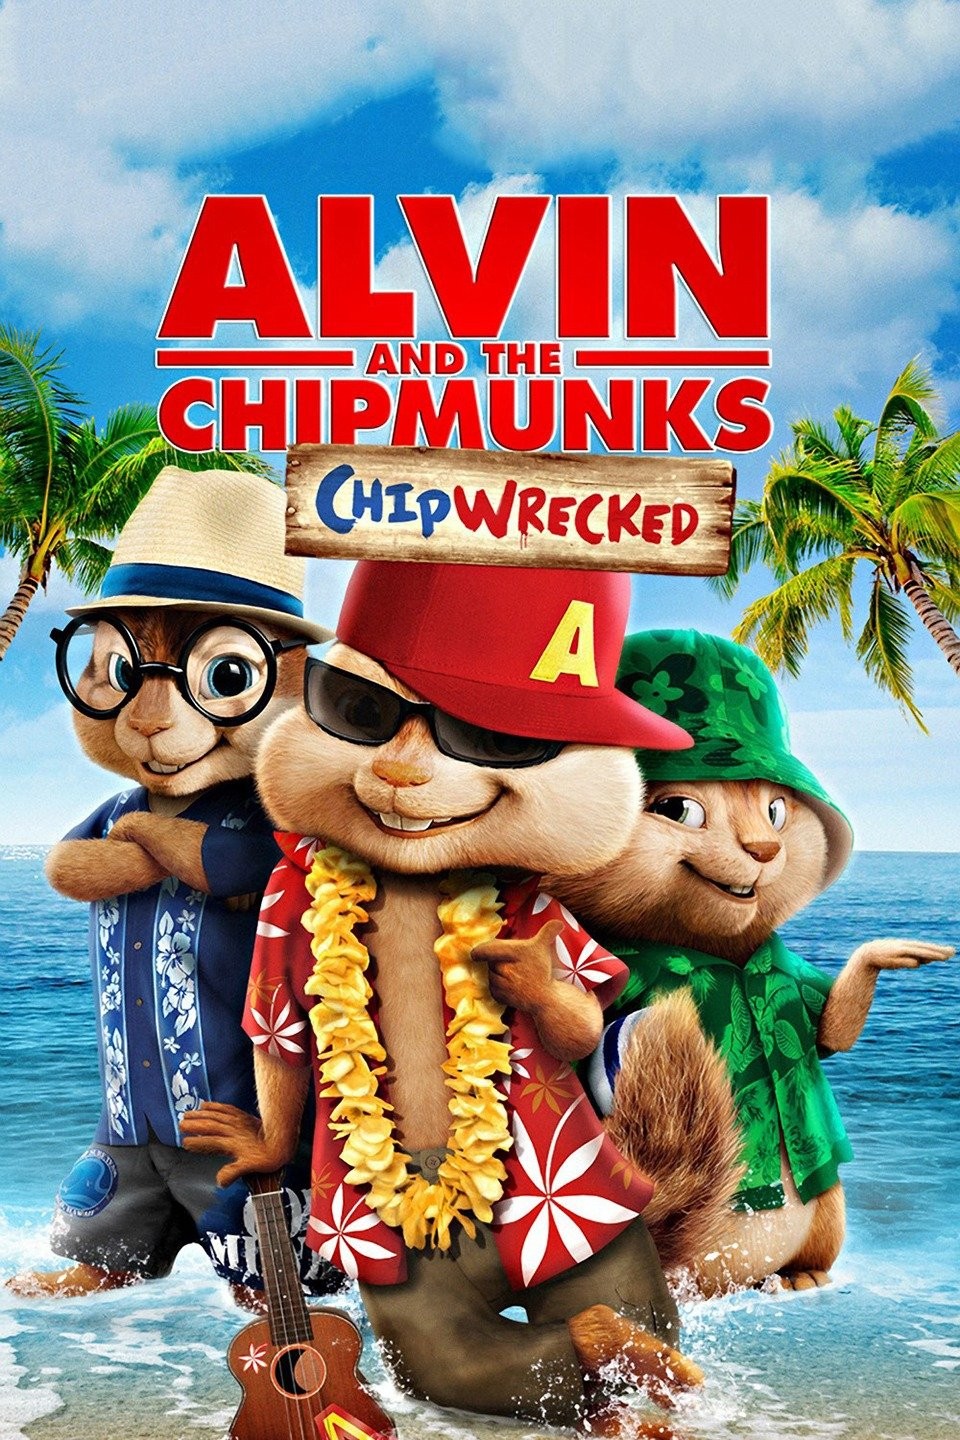 Alvin and the Chipmunks (2007) Movie Reviews - COFCA